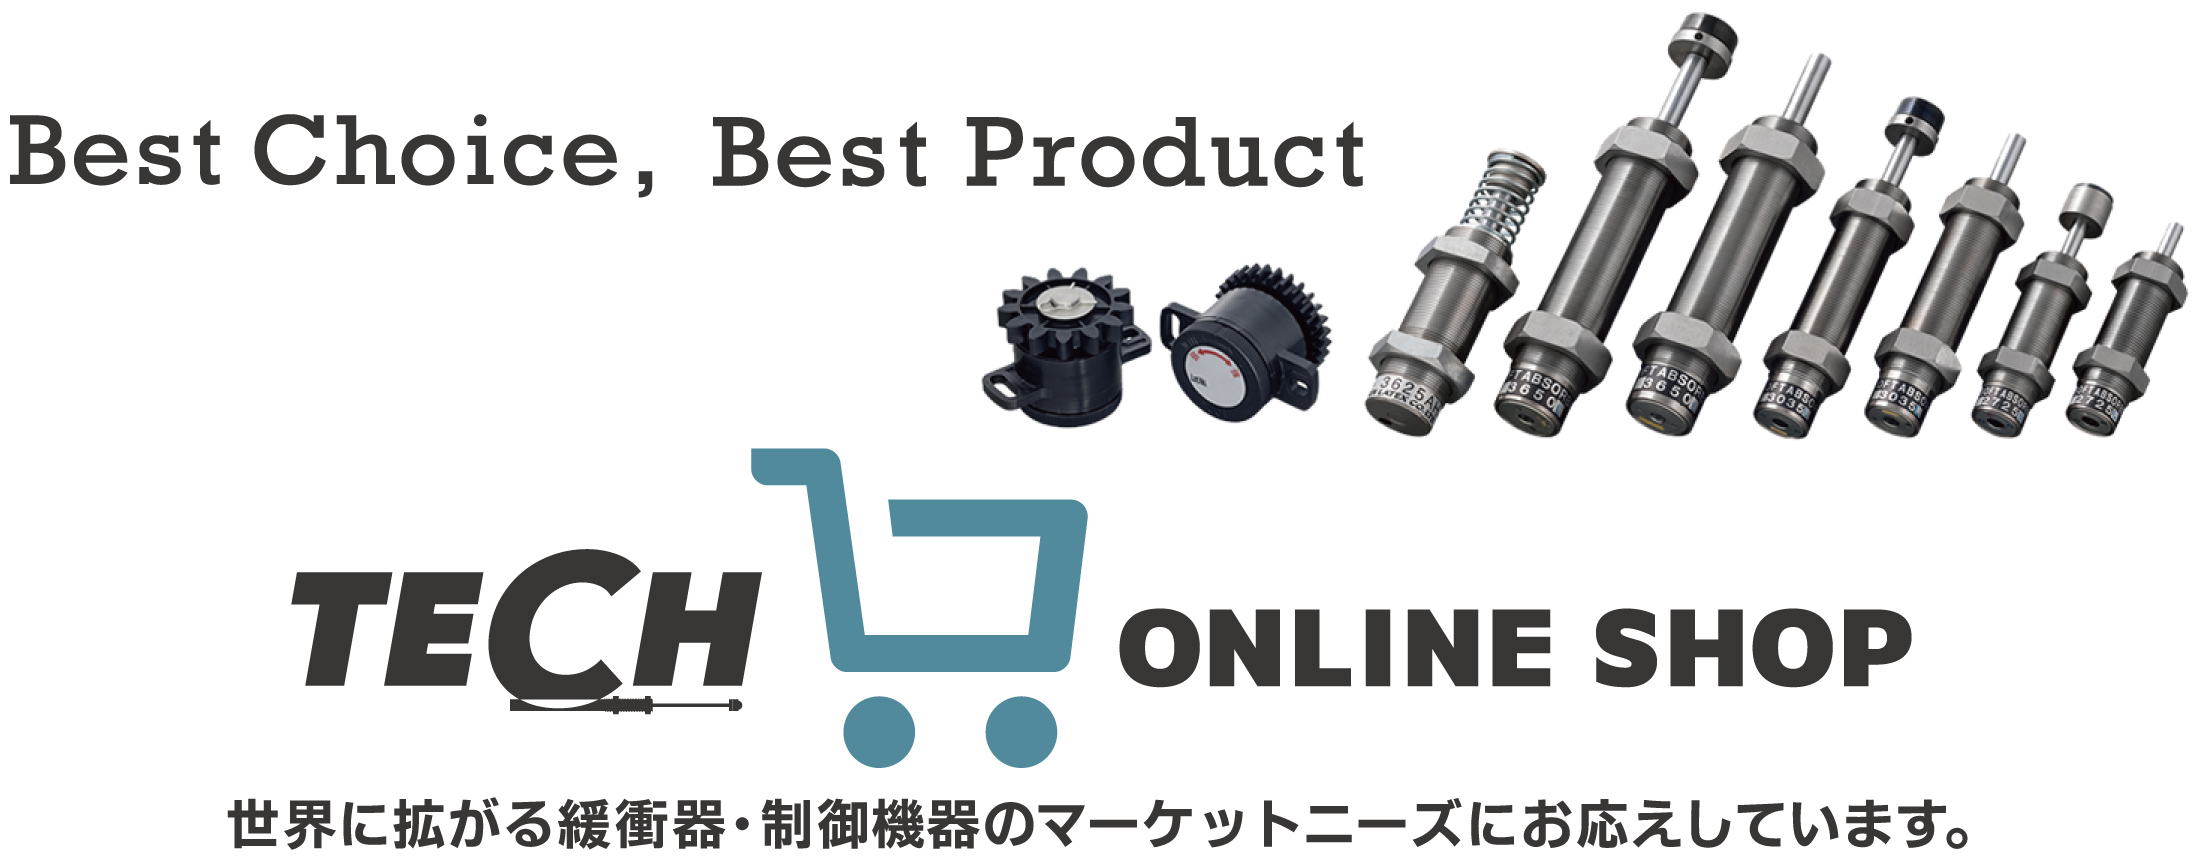 「Best Choice, Best Product」世界に広がる緩衝器・制御機器のマーケットニーズにお応えしています。